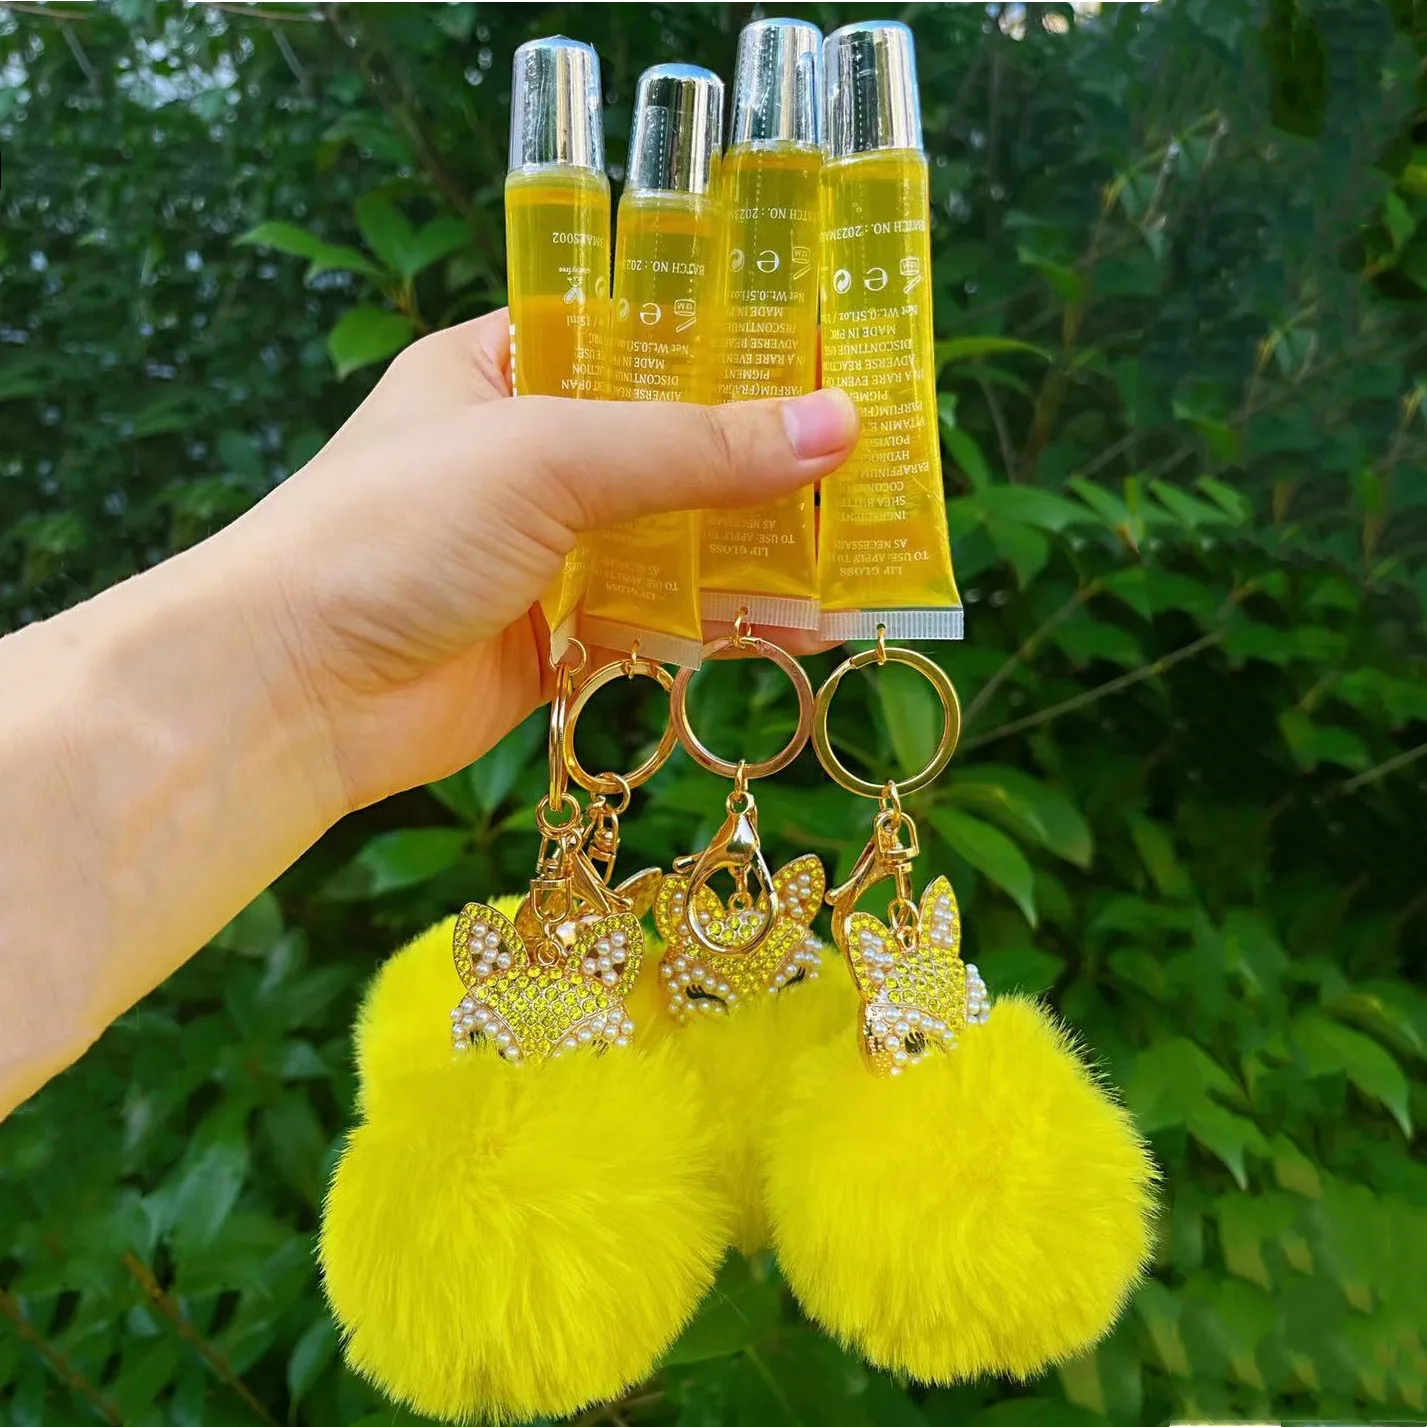 Huge lot of mini lipgloss keychains